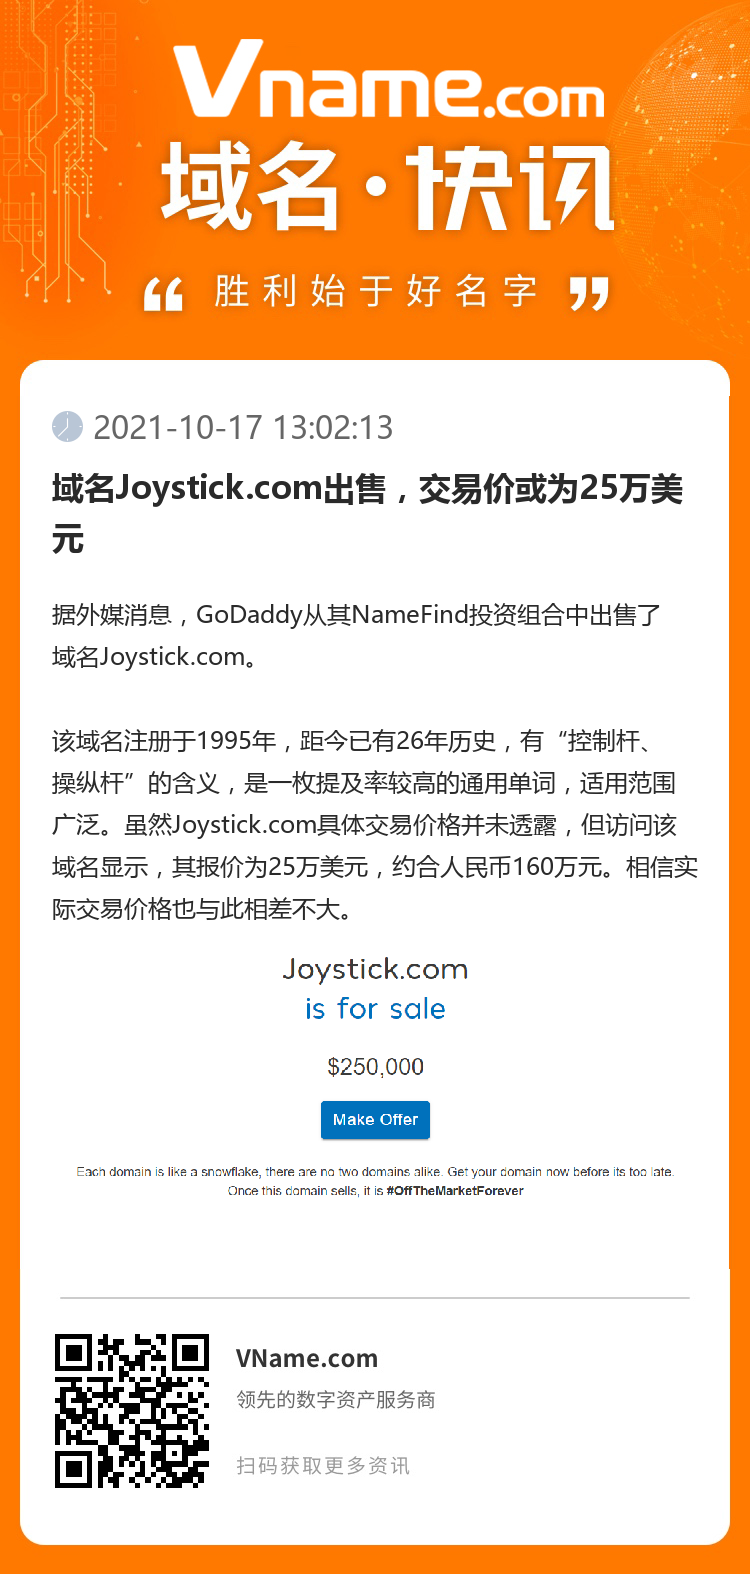 域名Joystick.com出售，交易价或为25万美元